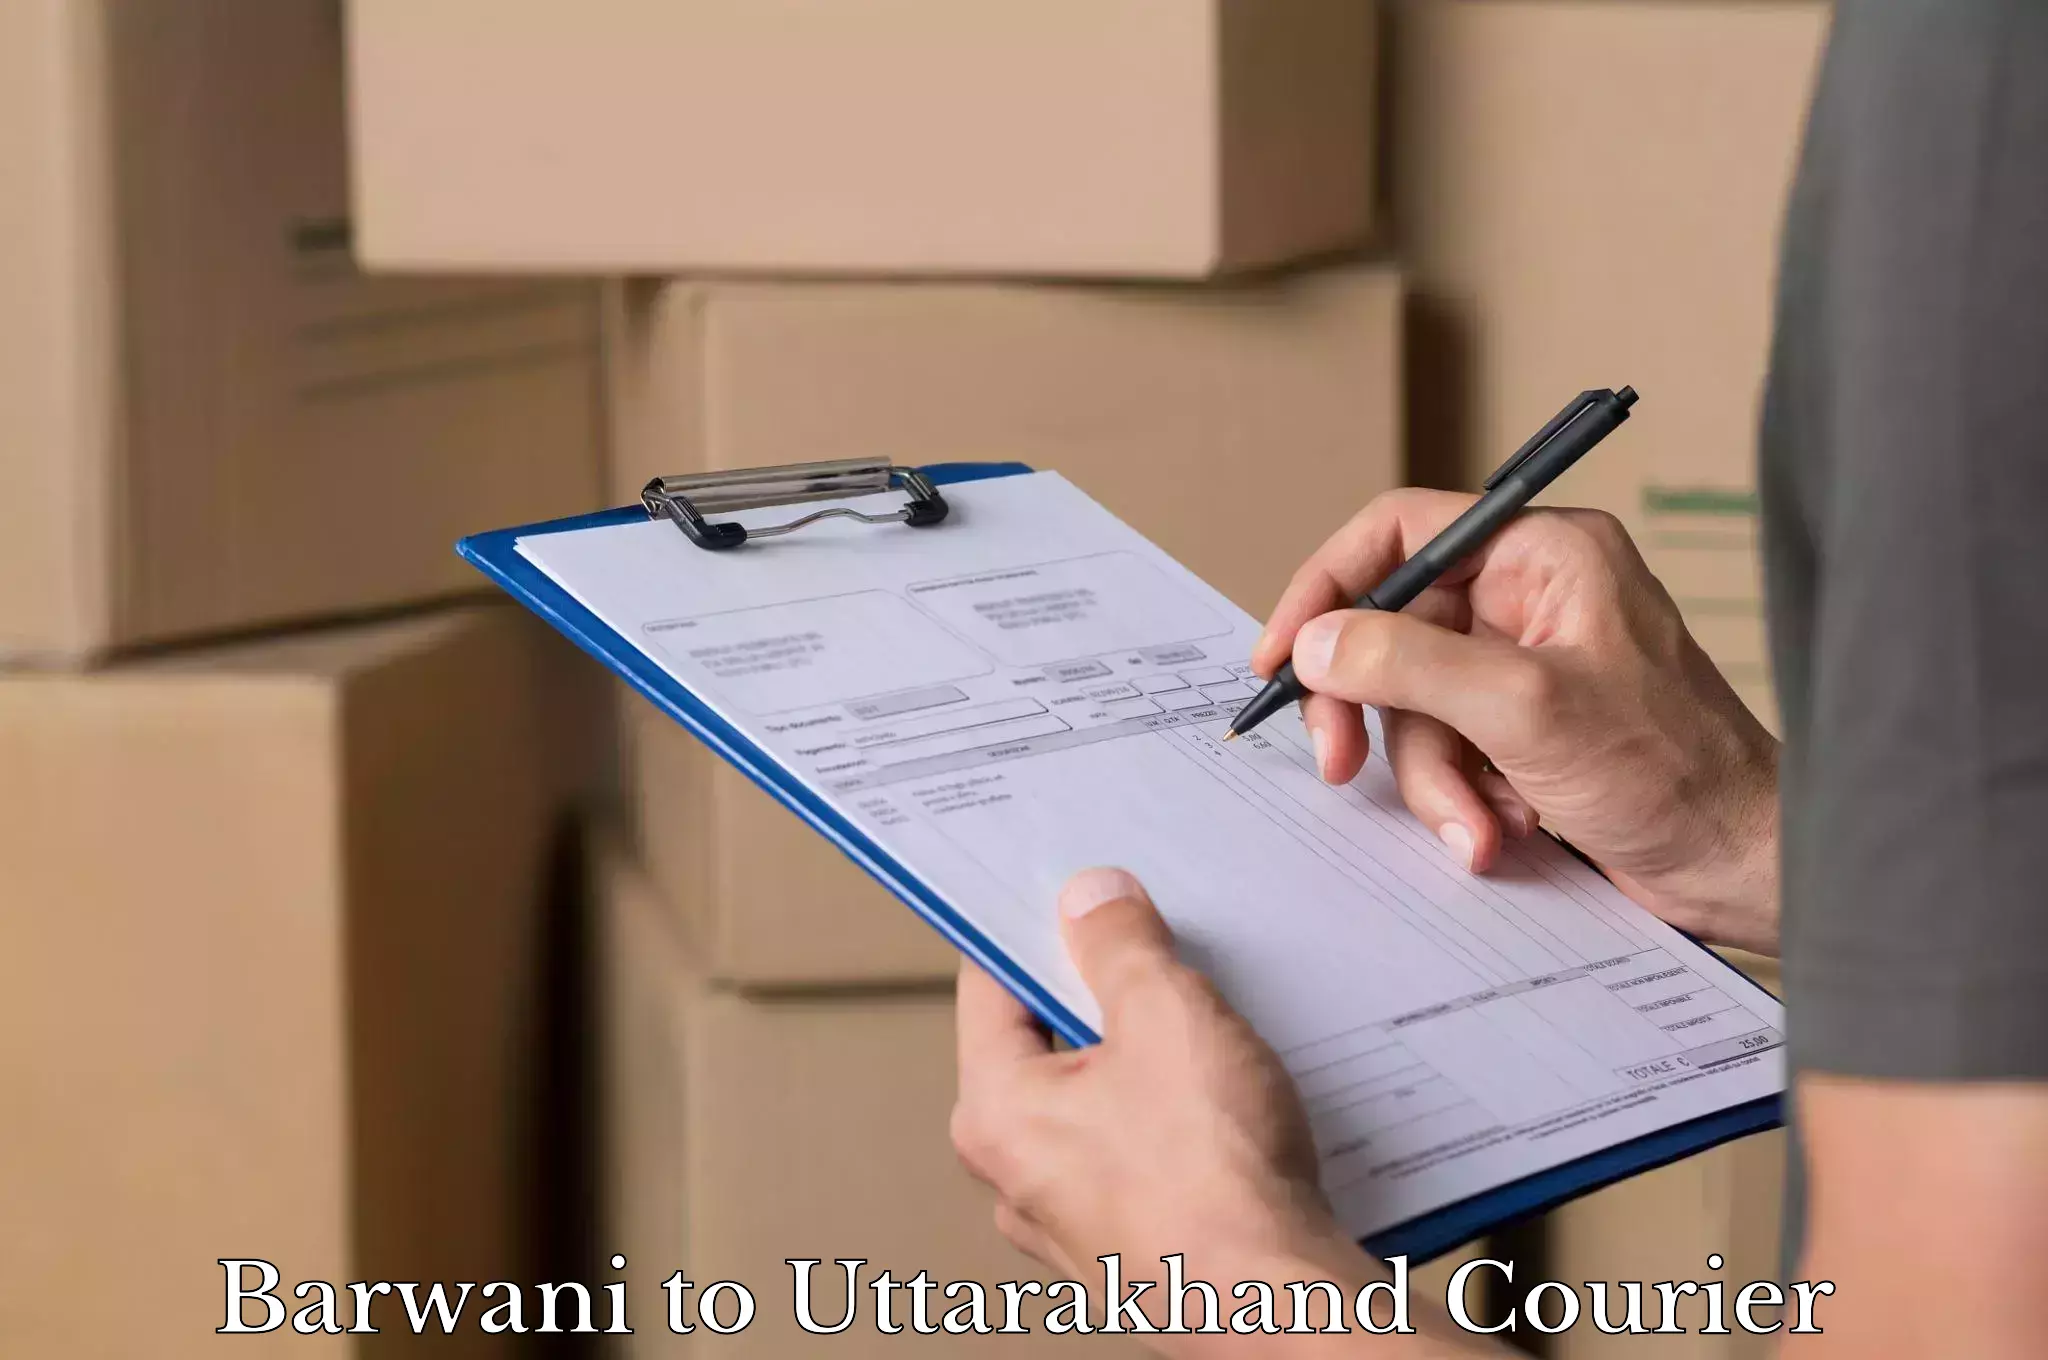 Luggage delivery providers Barwani to Uttarakhand